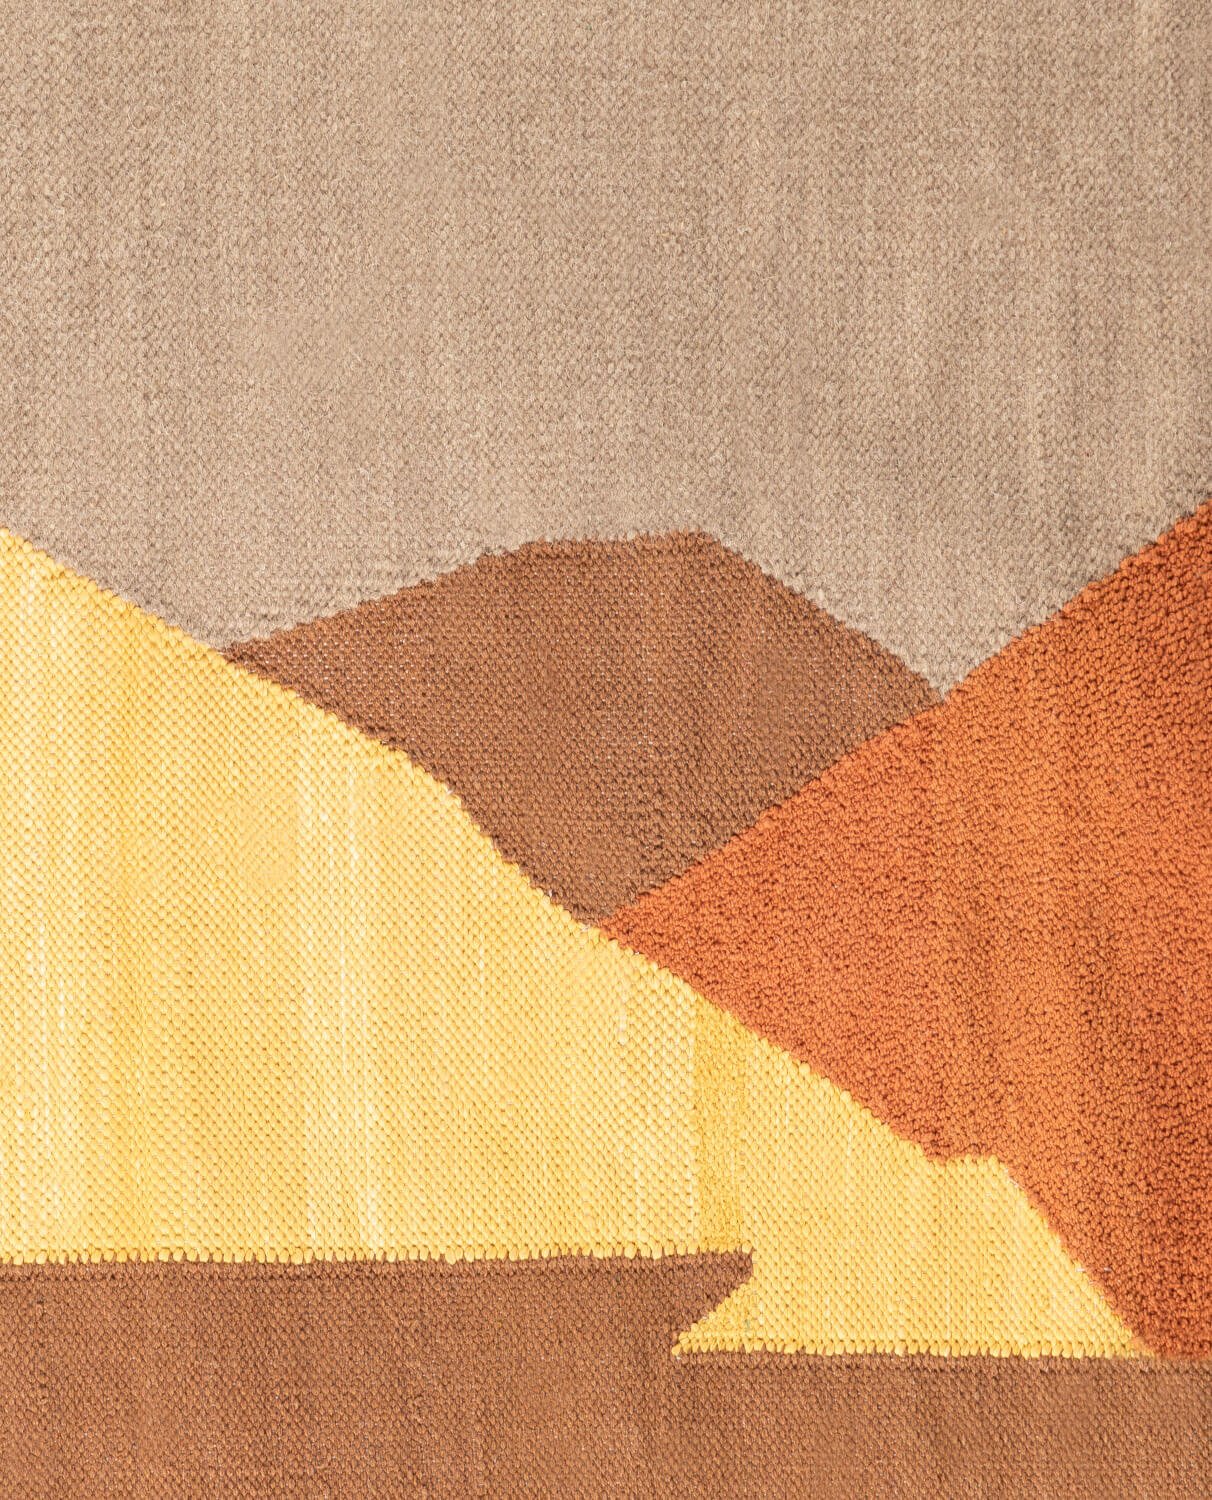 Tappeto Artigianale in Lana e Cotone (262X162 cm) Tanya, immagine della galleria 2